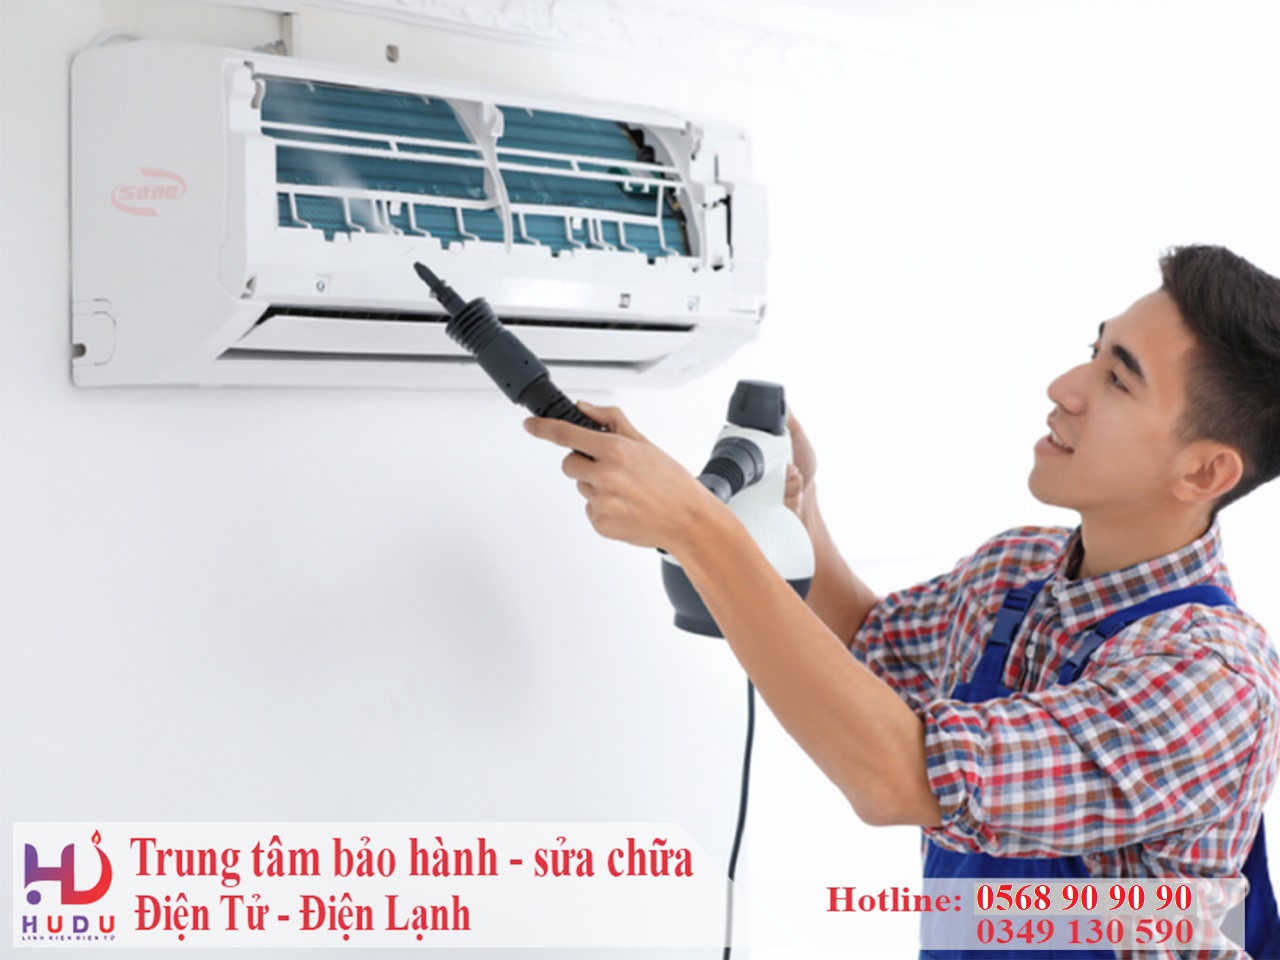 Dịch vụ bảo hành sửa chữa điện lạnh tại Hà Nam